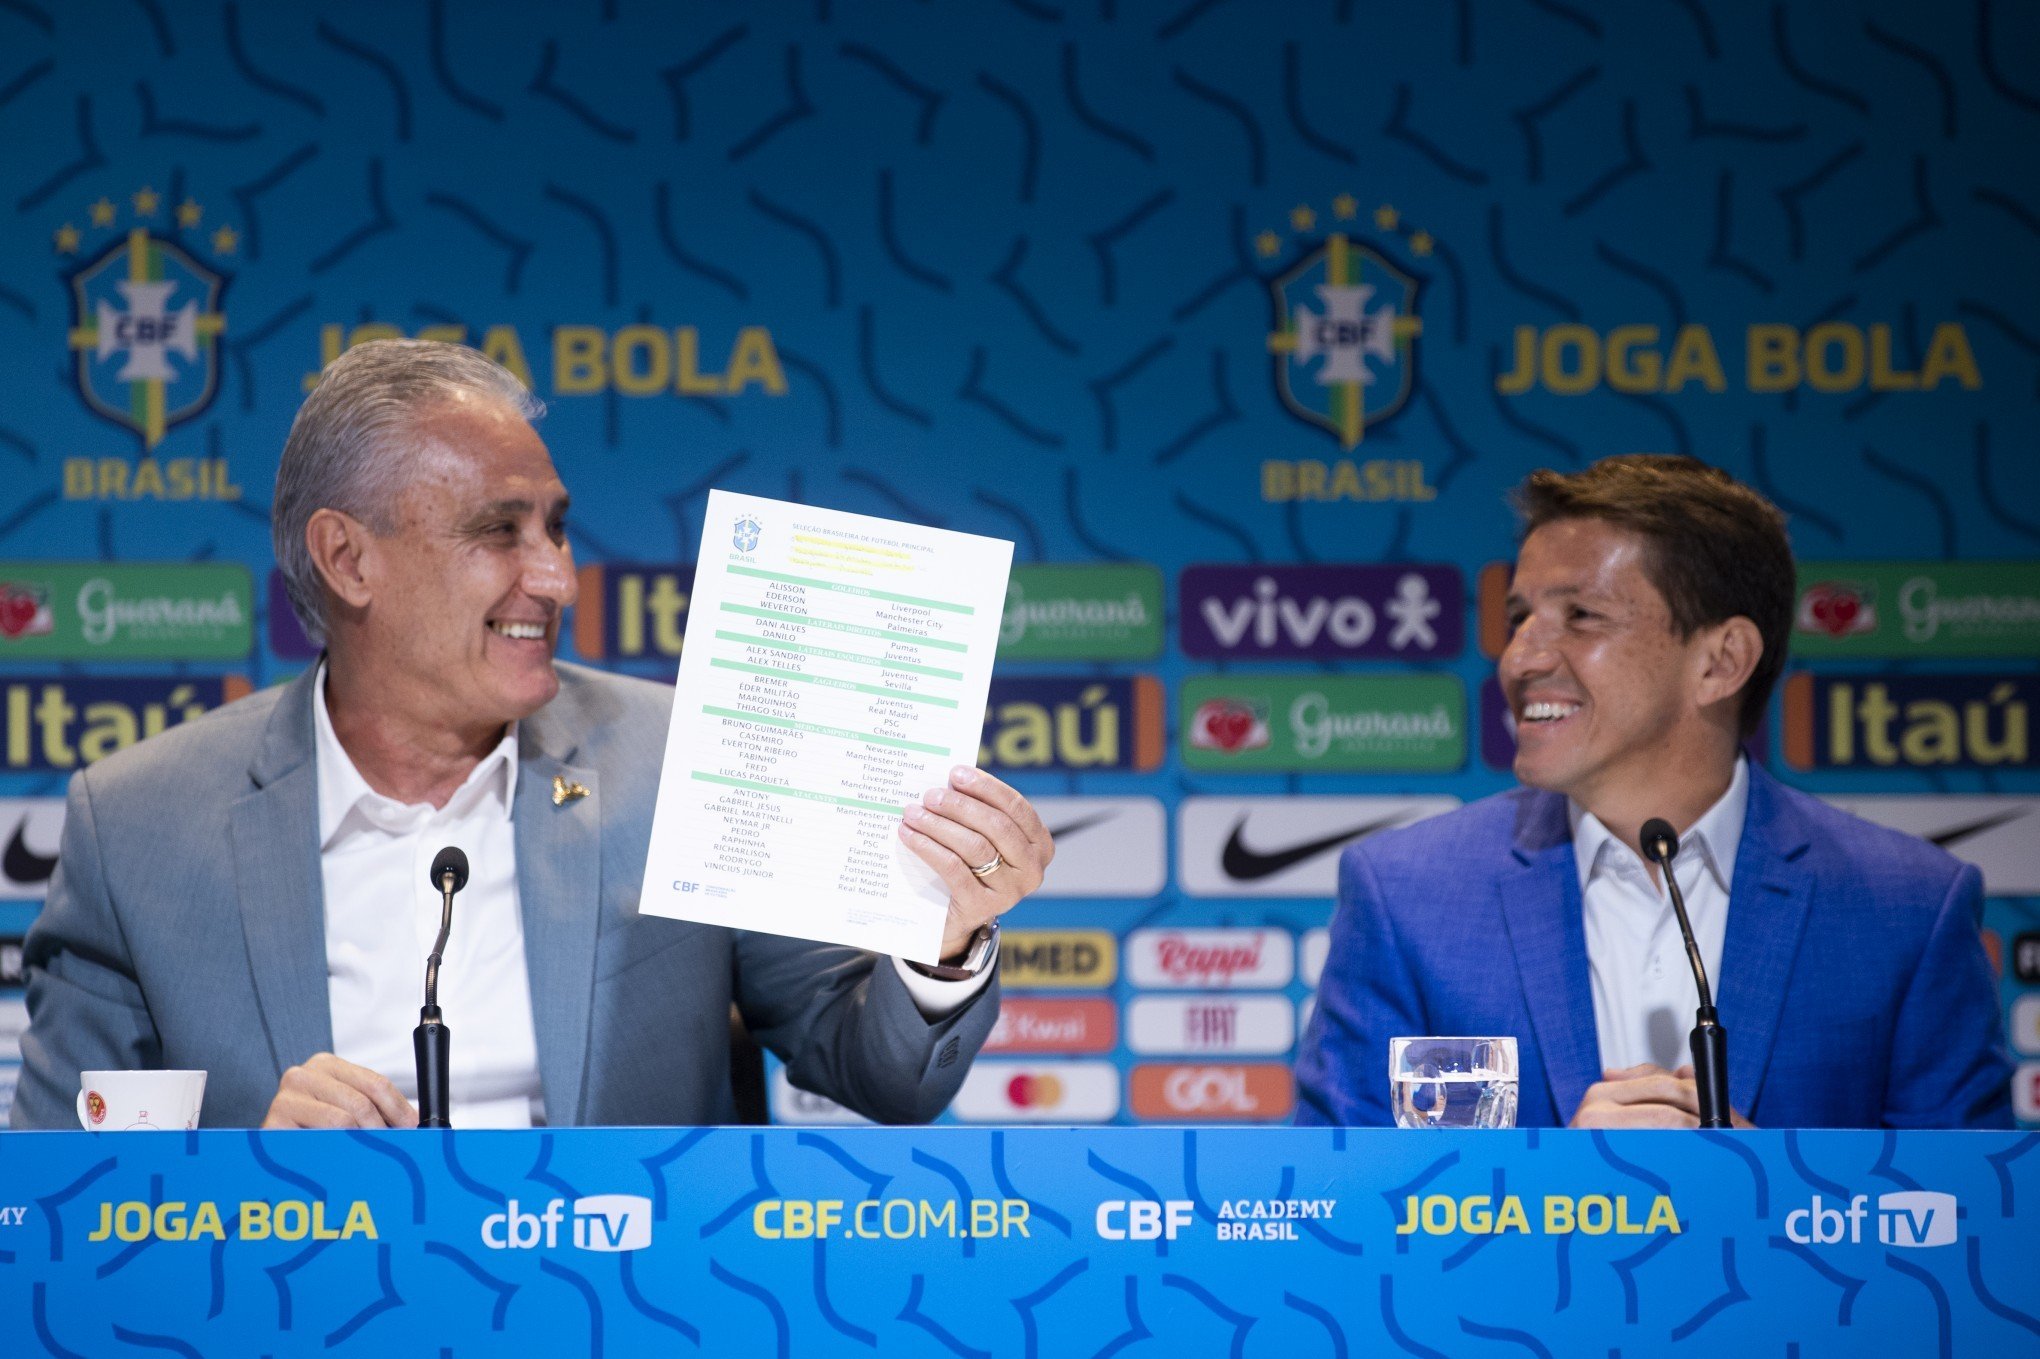 Confira os horários dos jogos do Brasil na Copa do Mundo no Catar